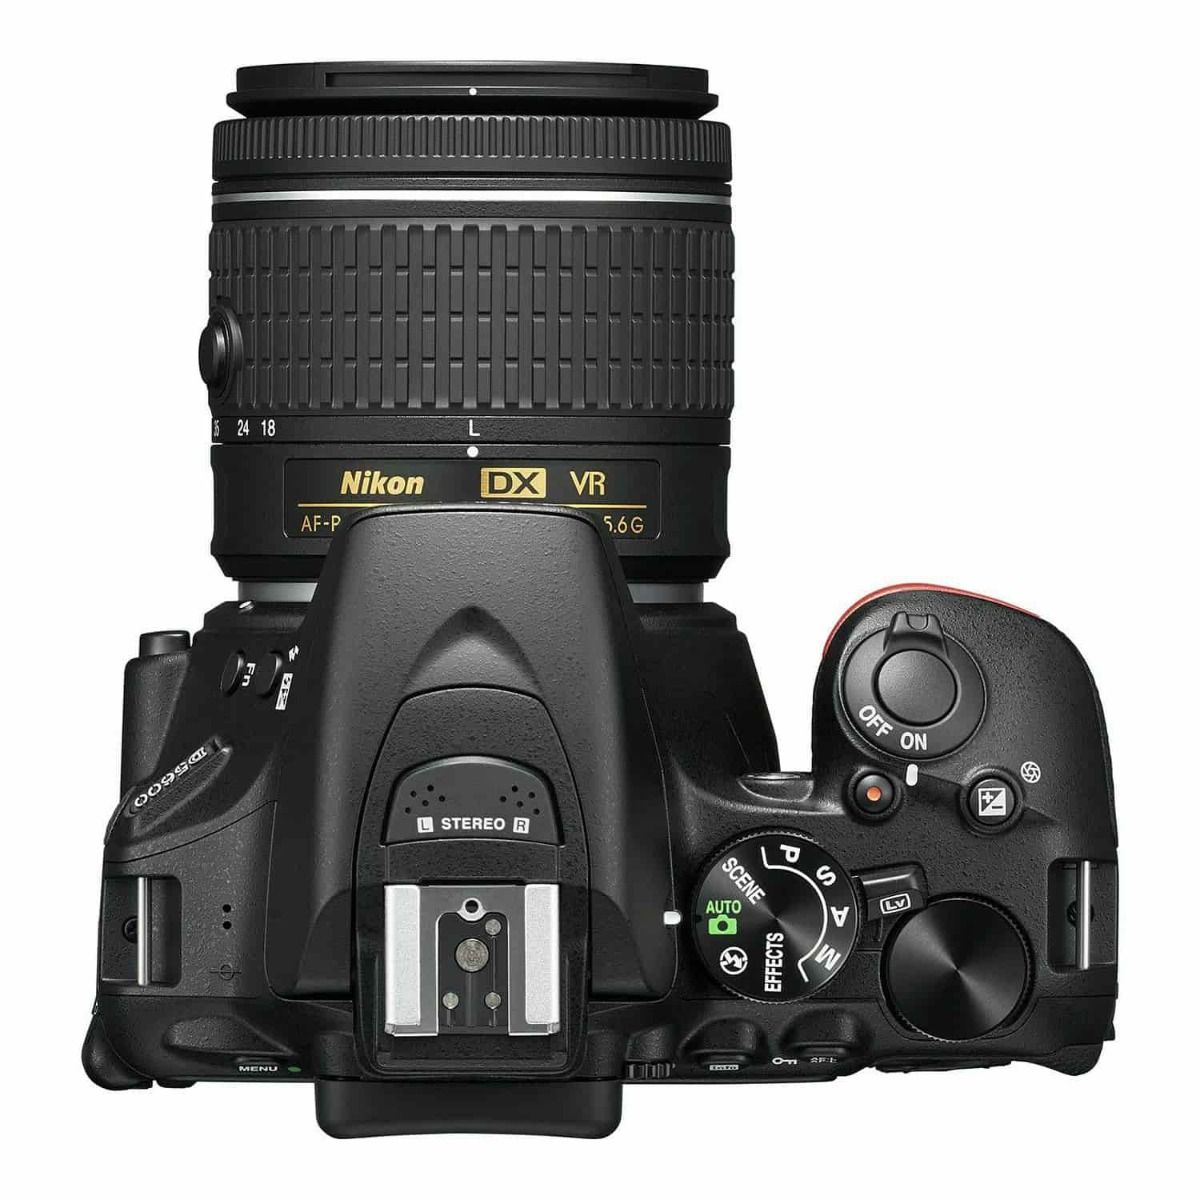 Nikon D5600 DSLR Camera With 18-55mm Kit